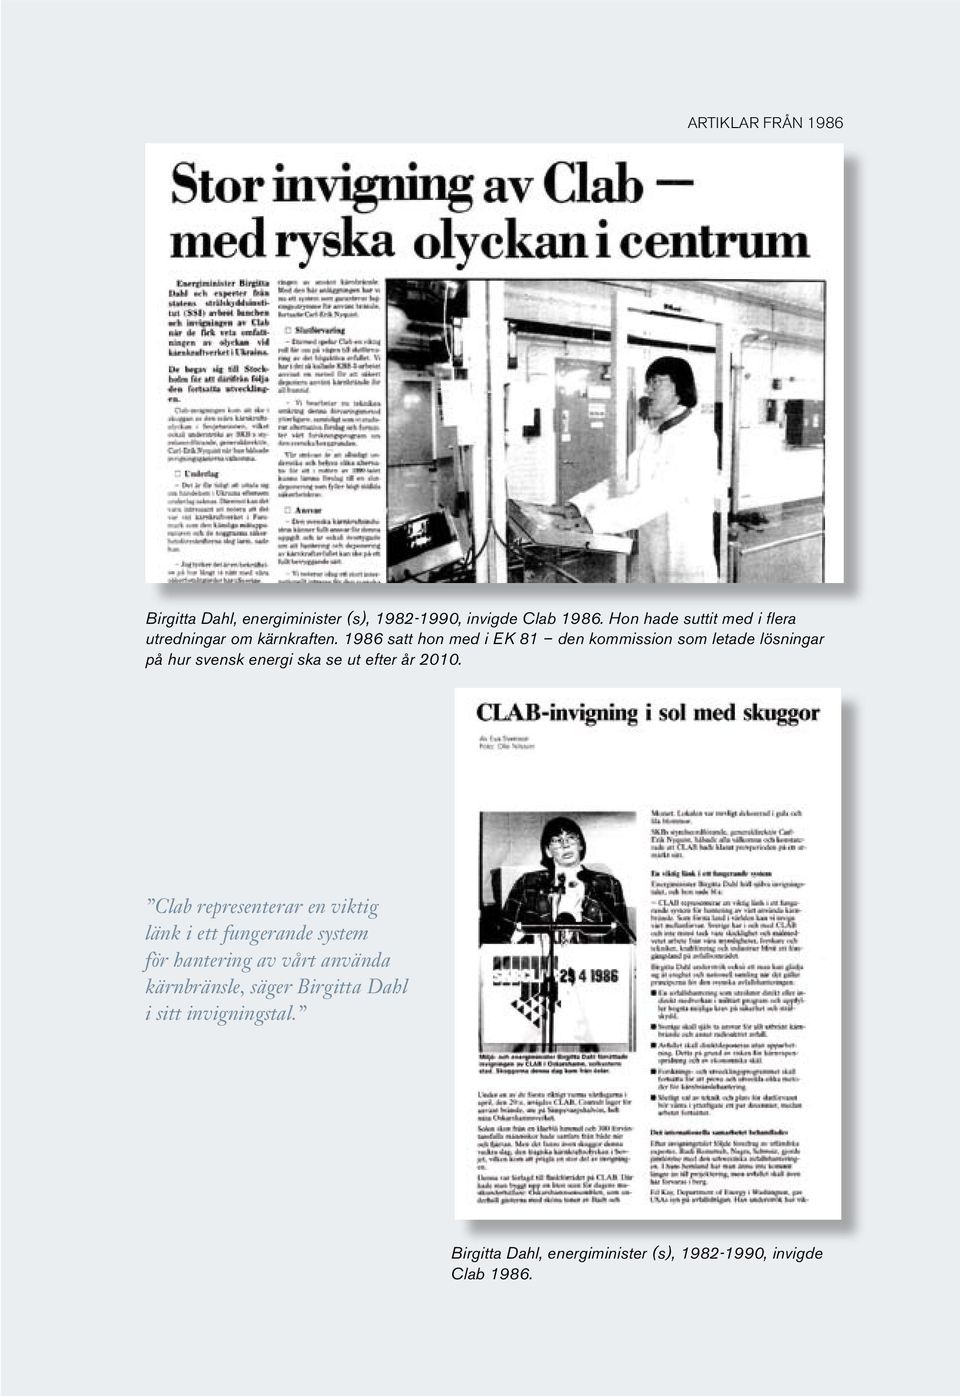 1986 satt hon med i EK 81 den kommission som letade lösningar på hur svensk energi ska se ut efter år 2010.